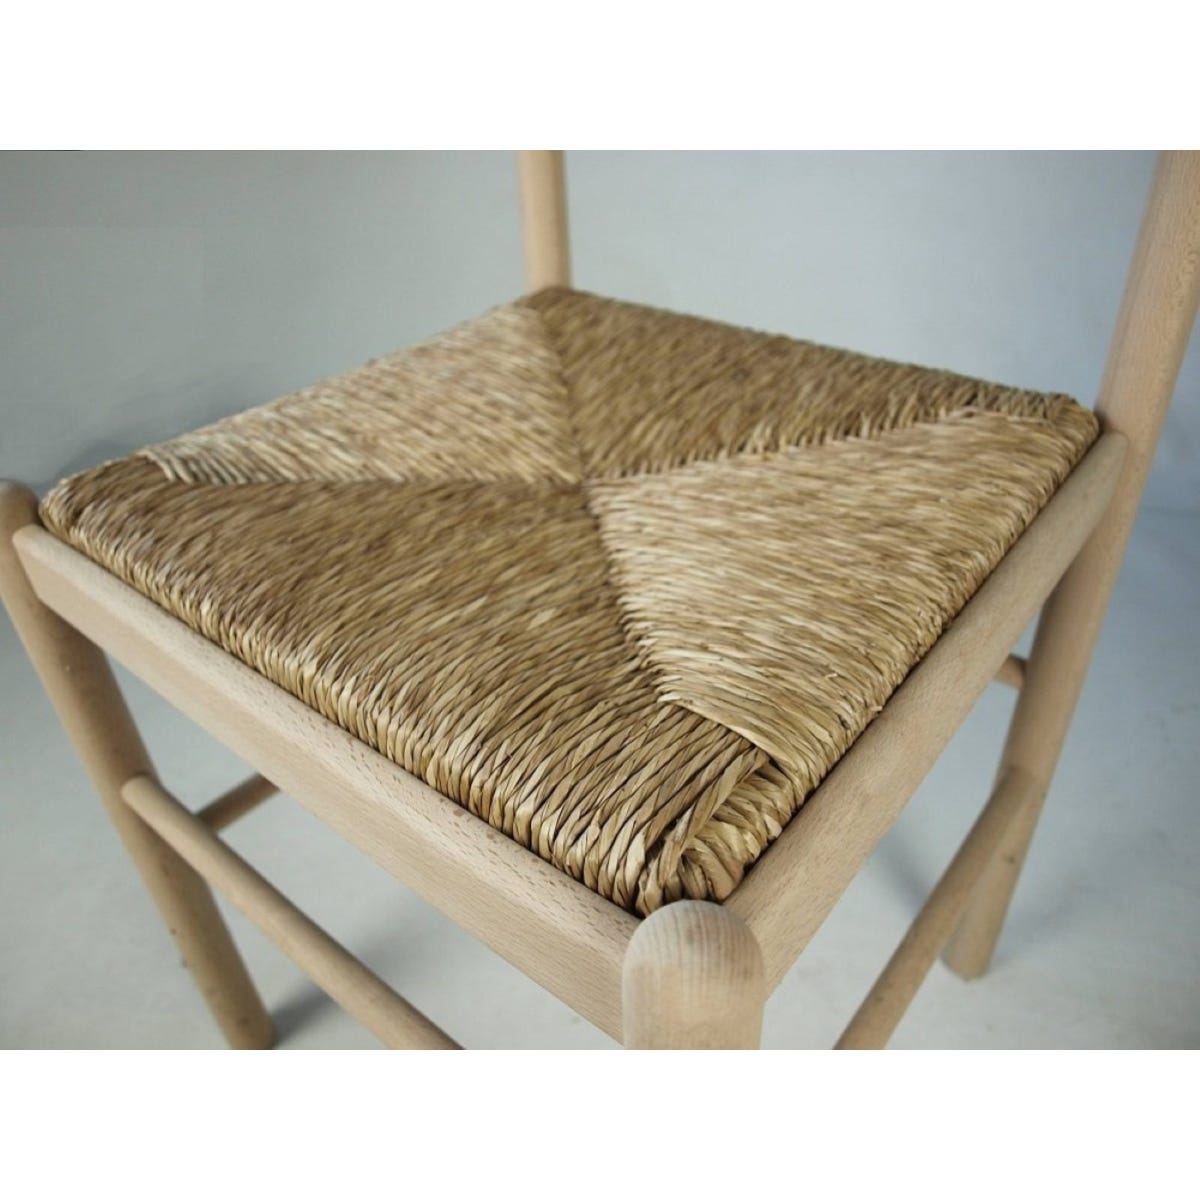 Sedile in paglia per sedia in legno da cucina37 x 37cm.Ricambi sedili per  sedie in paglia